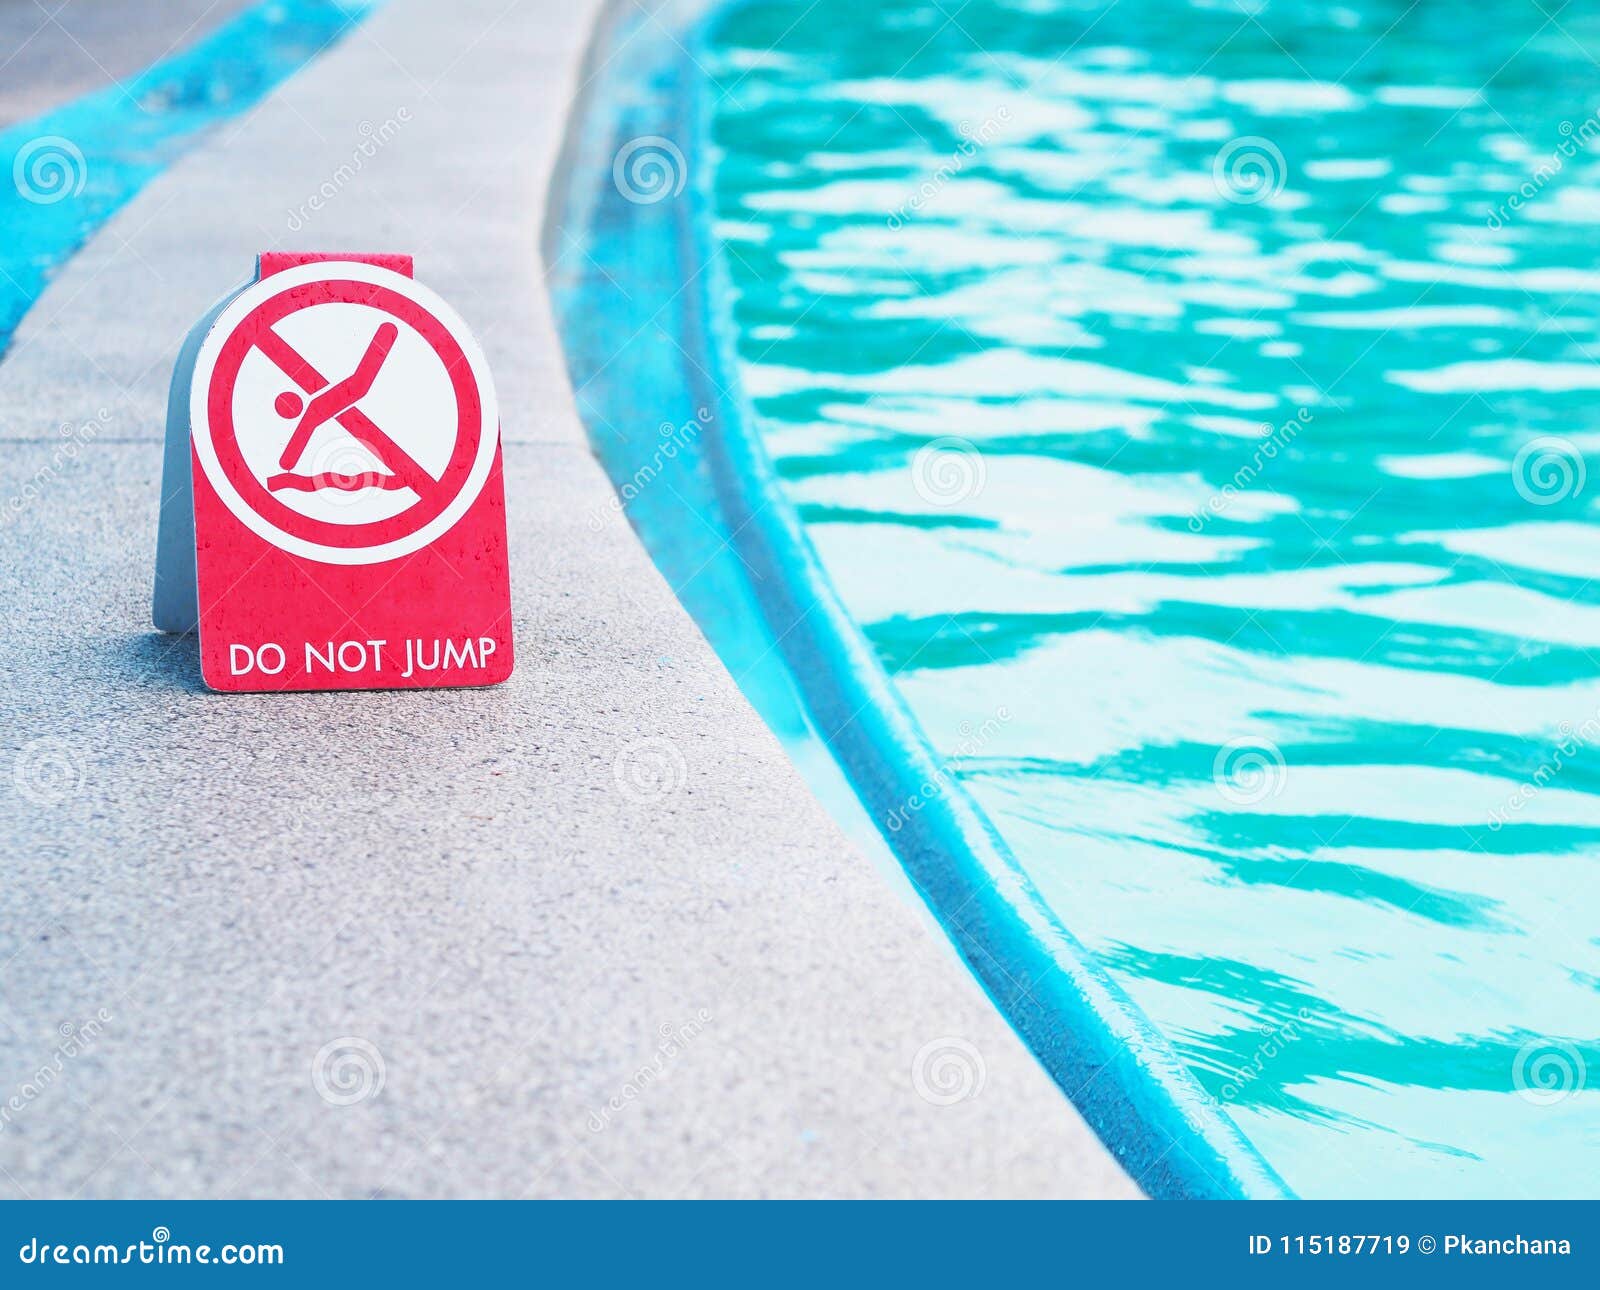 Сайт без водяных знаков. Таблички для бассейна. Указатель бассейн. Знак бассейн. Запрещающие знаки для бассейна.